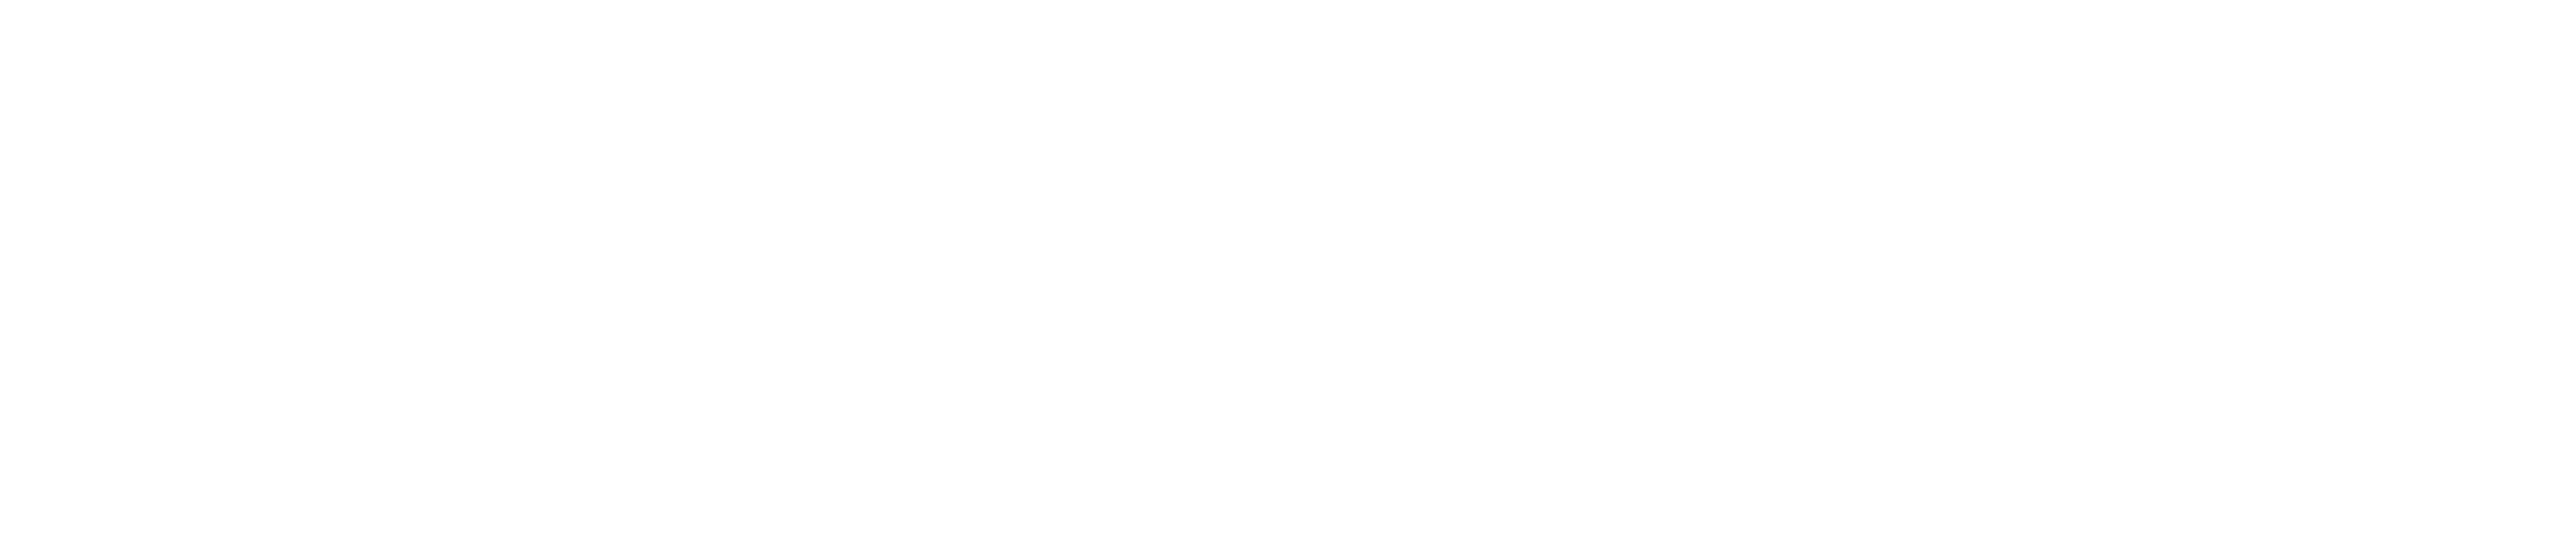 MetaVector Technologies